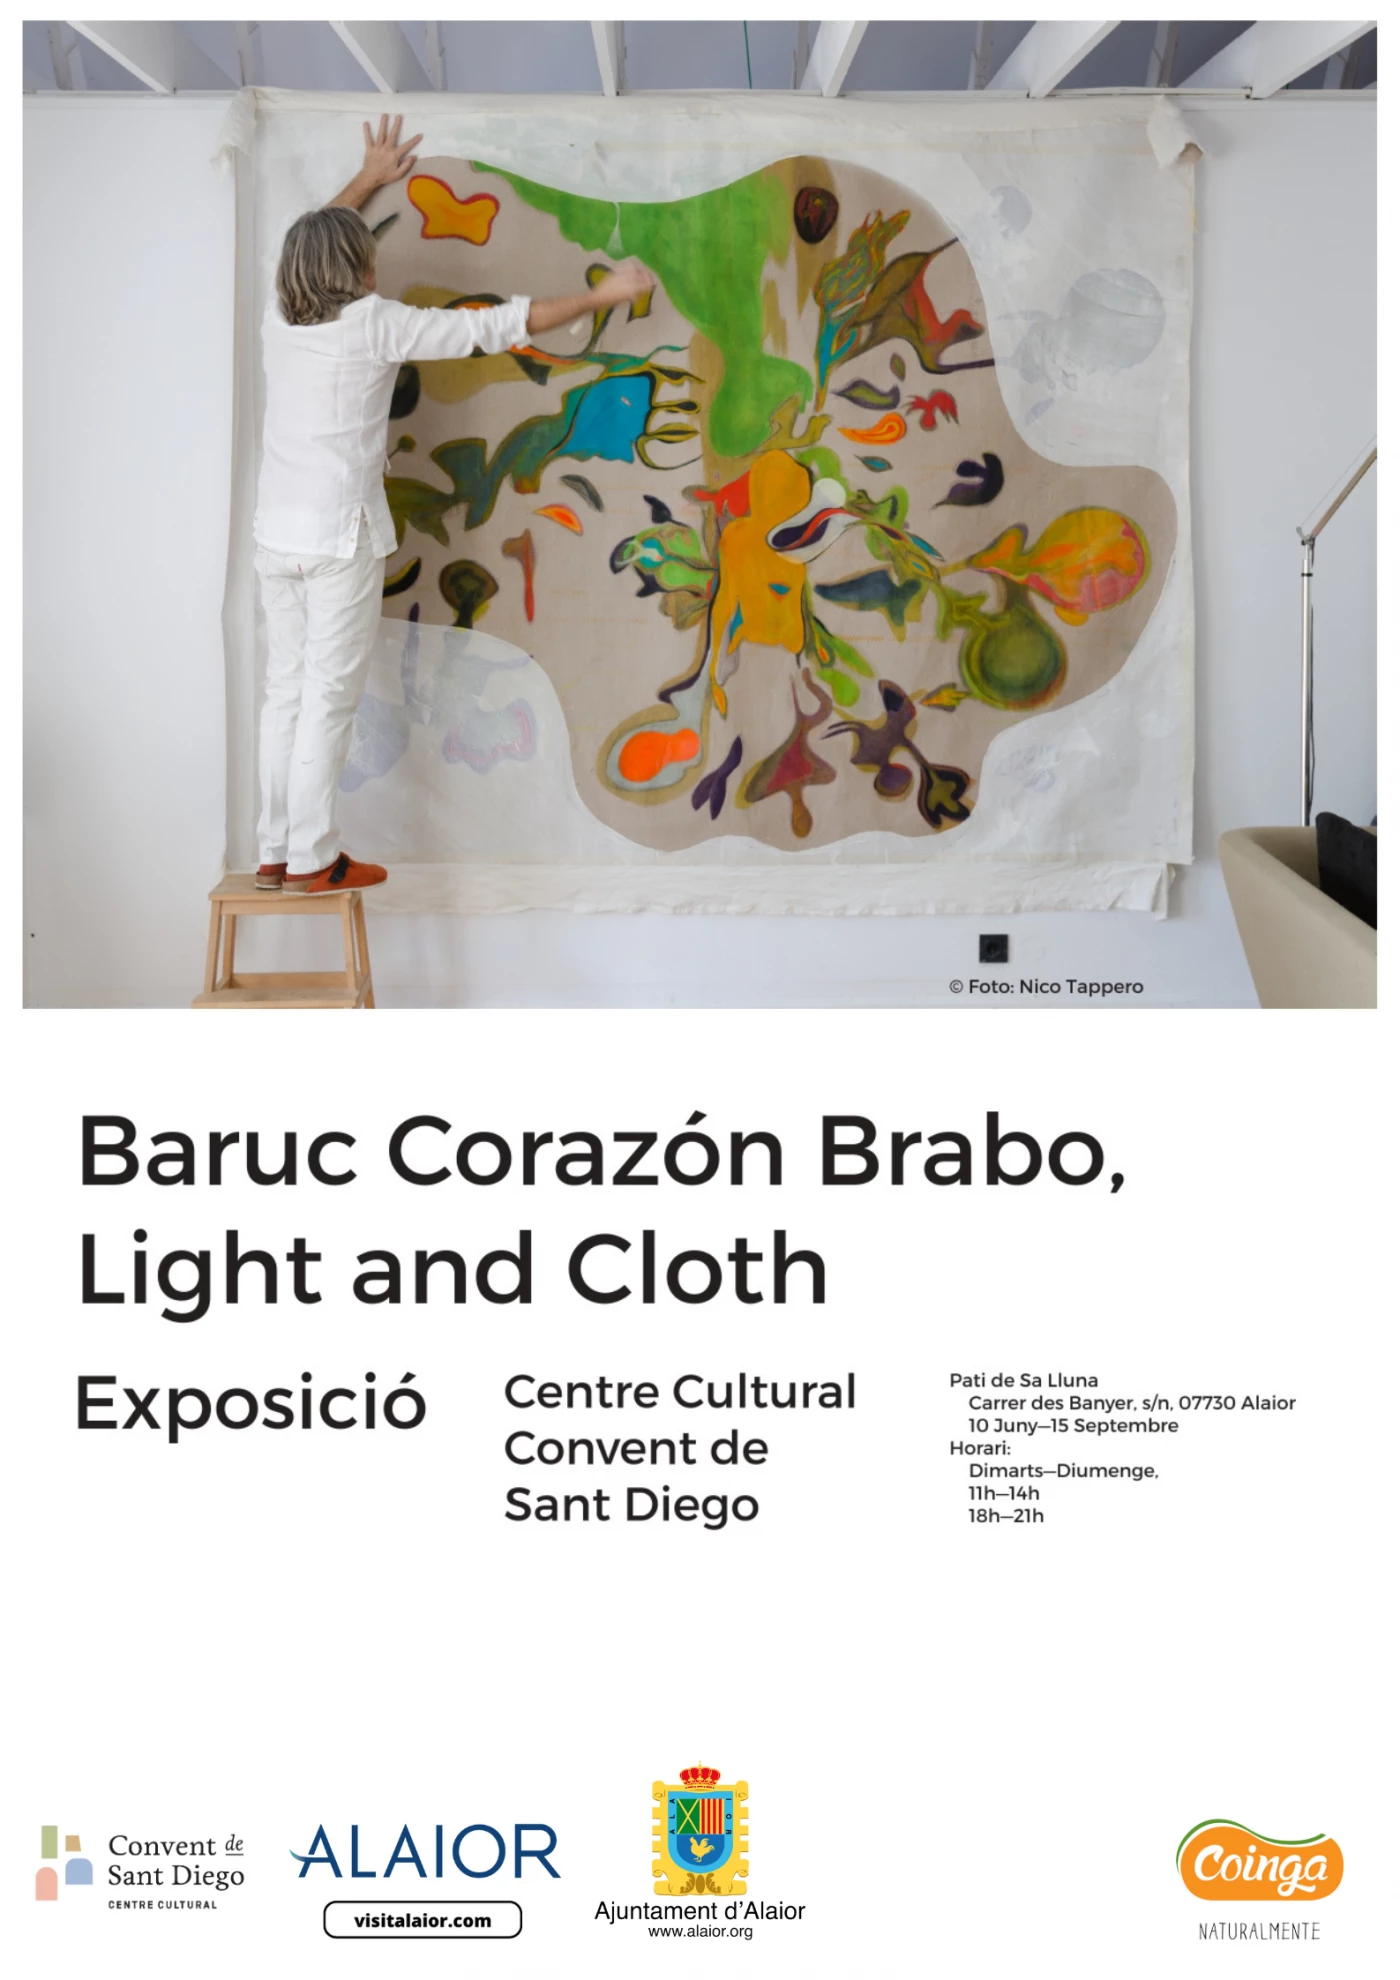 Image de l'événement Exposición "Heart, Light and Cloth" de Baruc